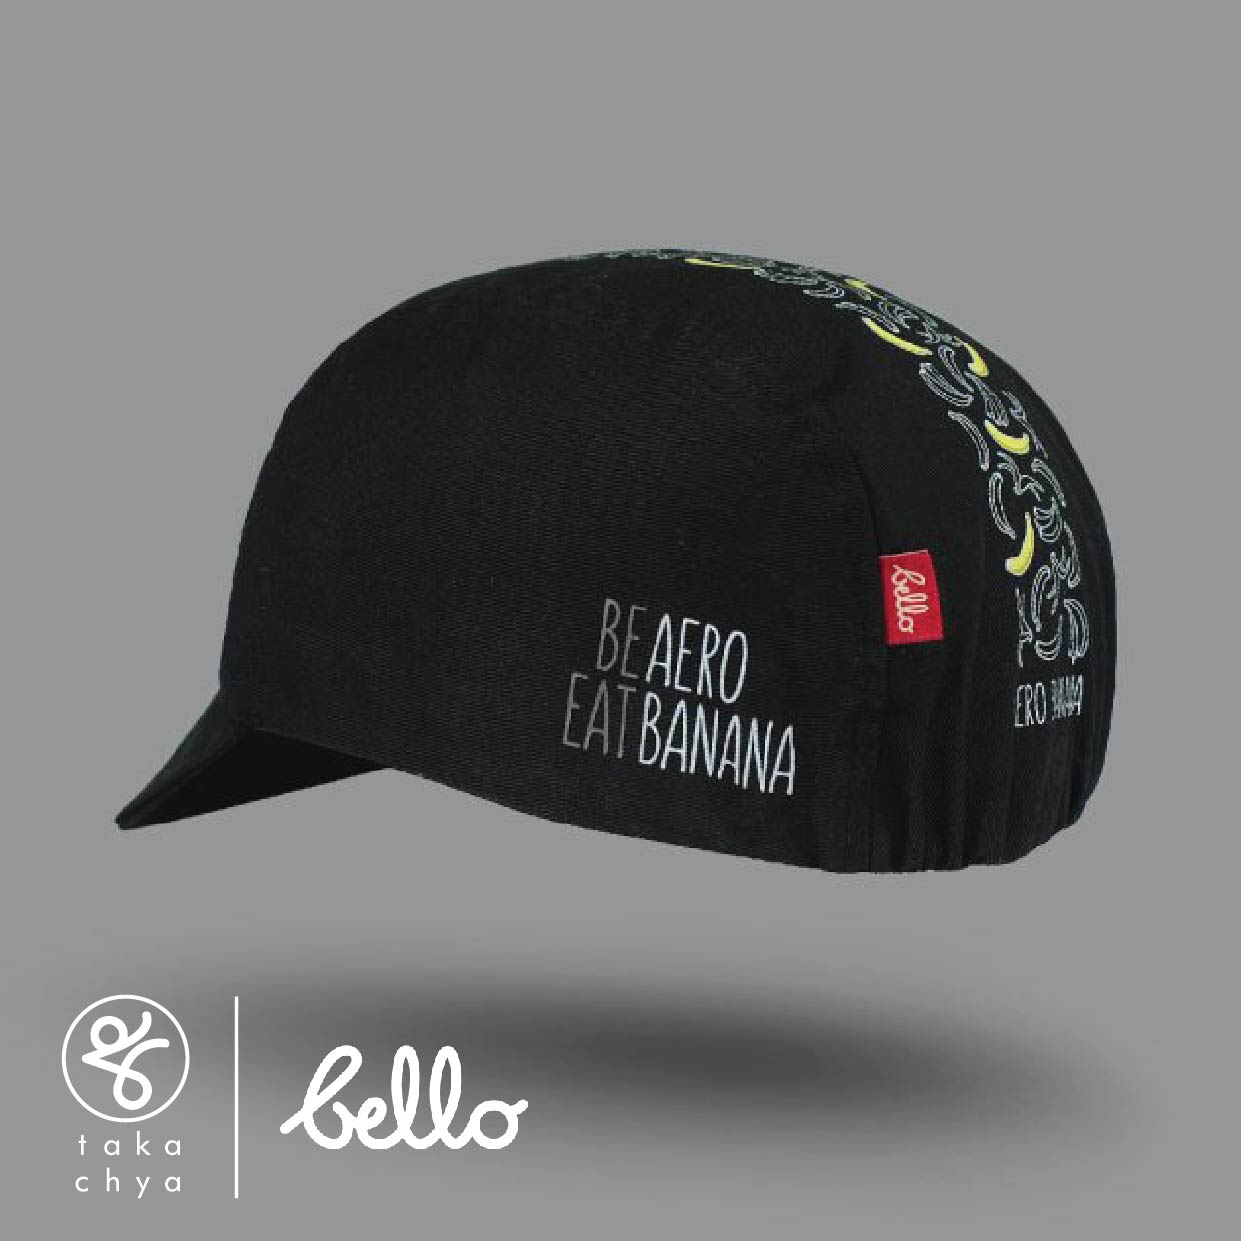 Aerobanana - Bello Cyclist Designer Collaboration Cycling Cap